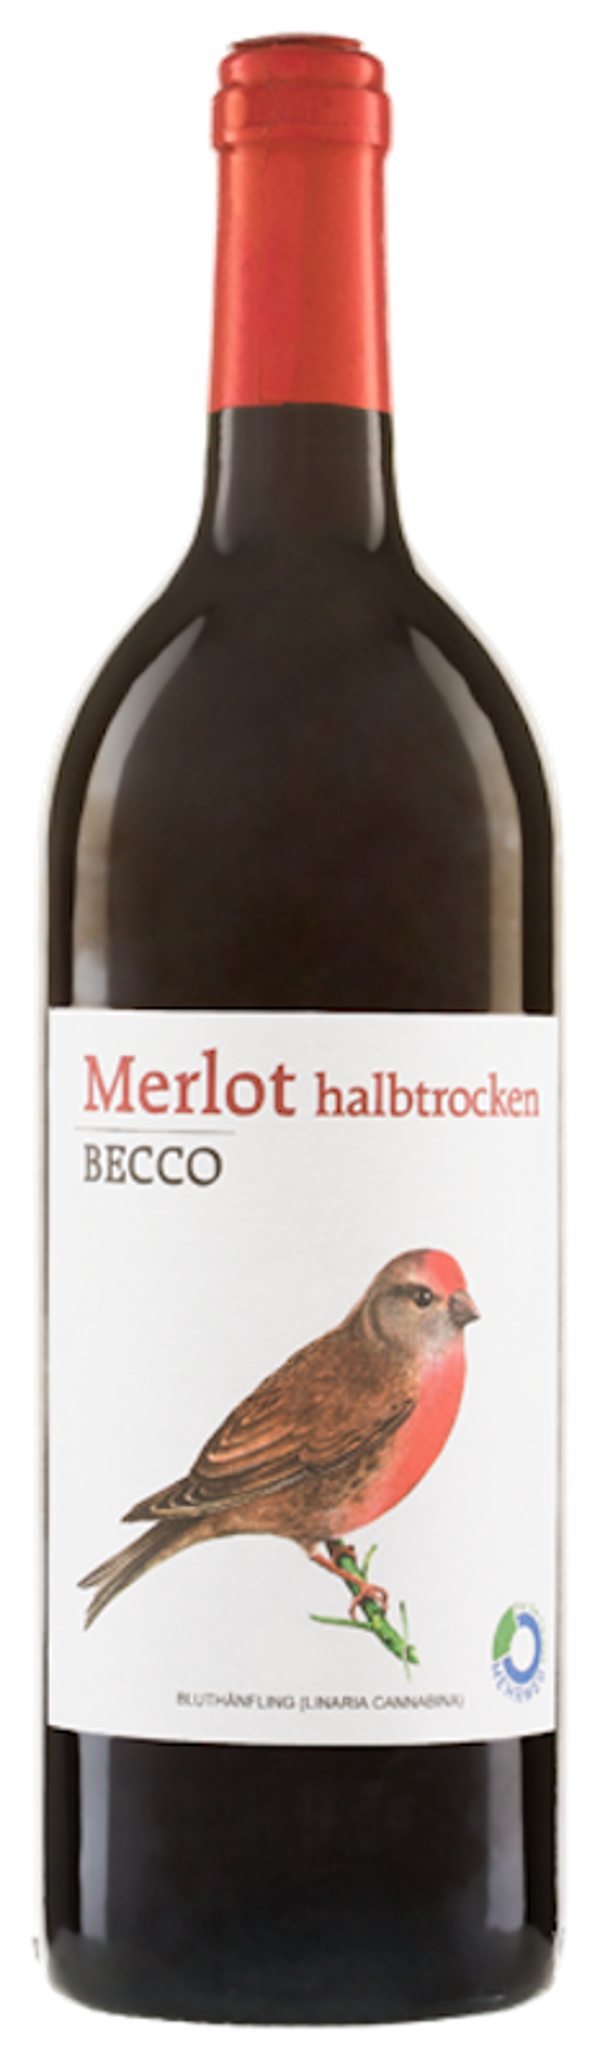 Produktfoto zu Merlot Becco halbtrocken rot 1l Riegel Bioweine